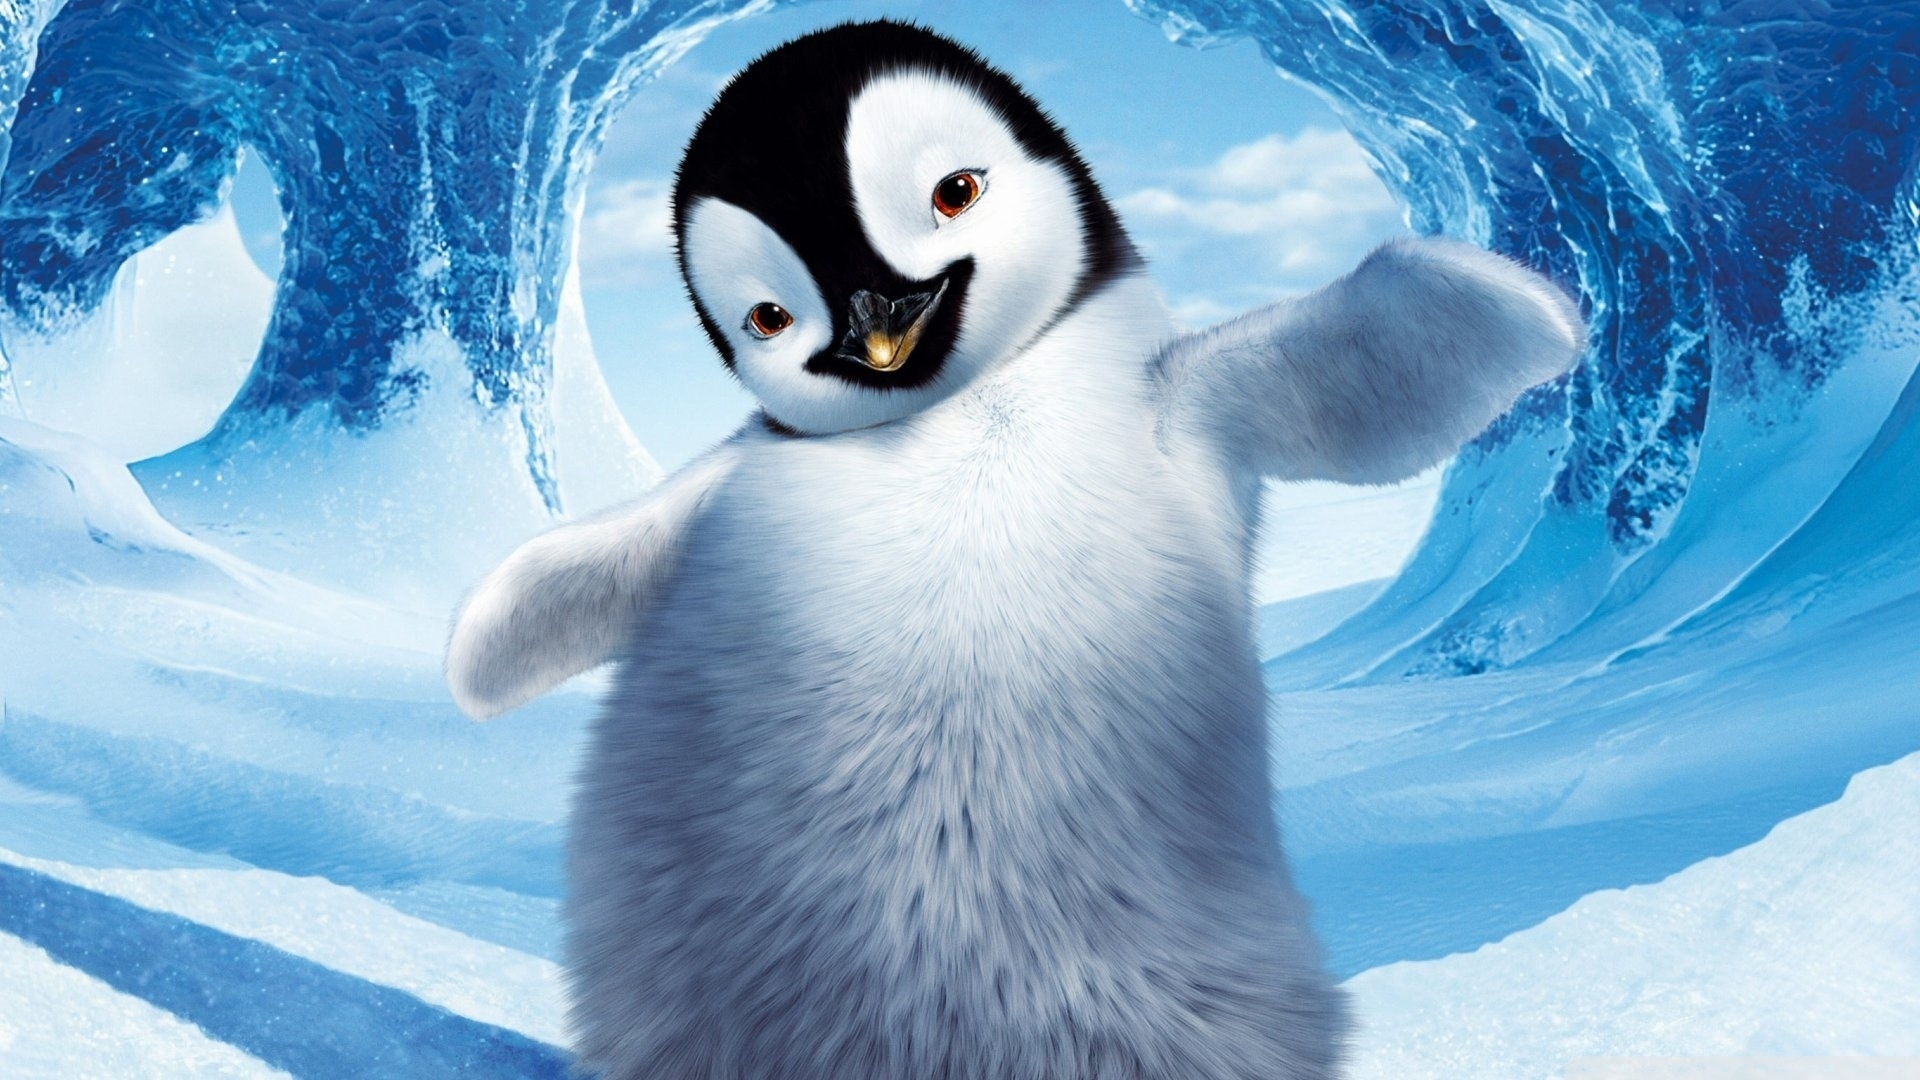 Популярные заставки и фоны Пингвины на компьютер